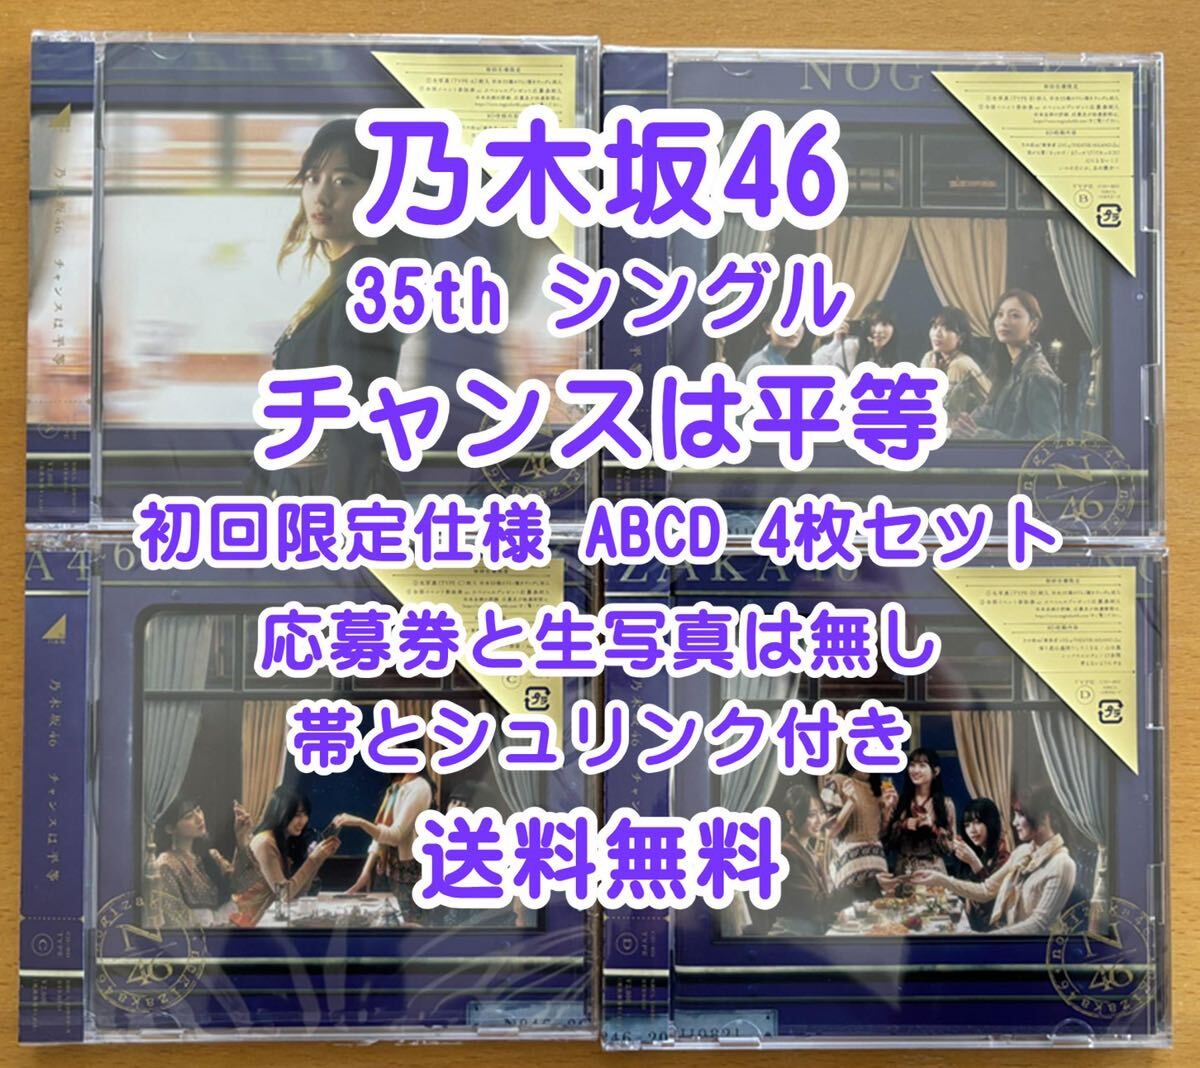 ◆ 乃木坂46 35th チャンスは平等 初回仕様限定盤 CD+Blu-ray ABCD 4枚セット 未再生 特典関係無し ◆ おすすめの画像1